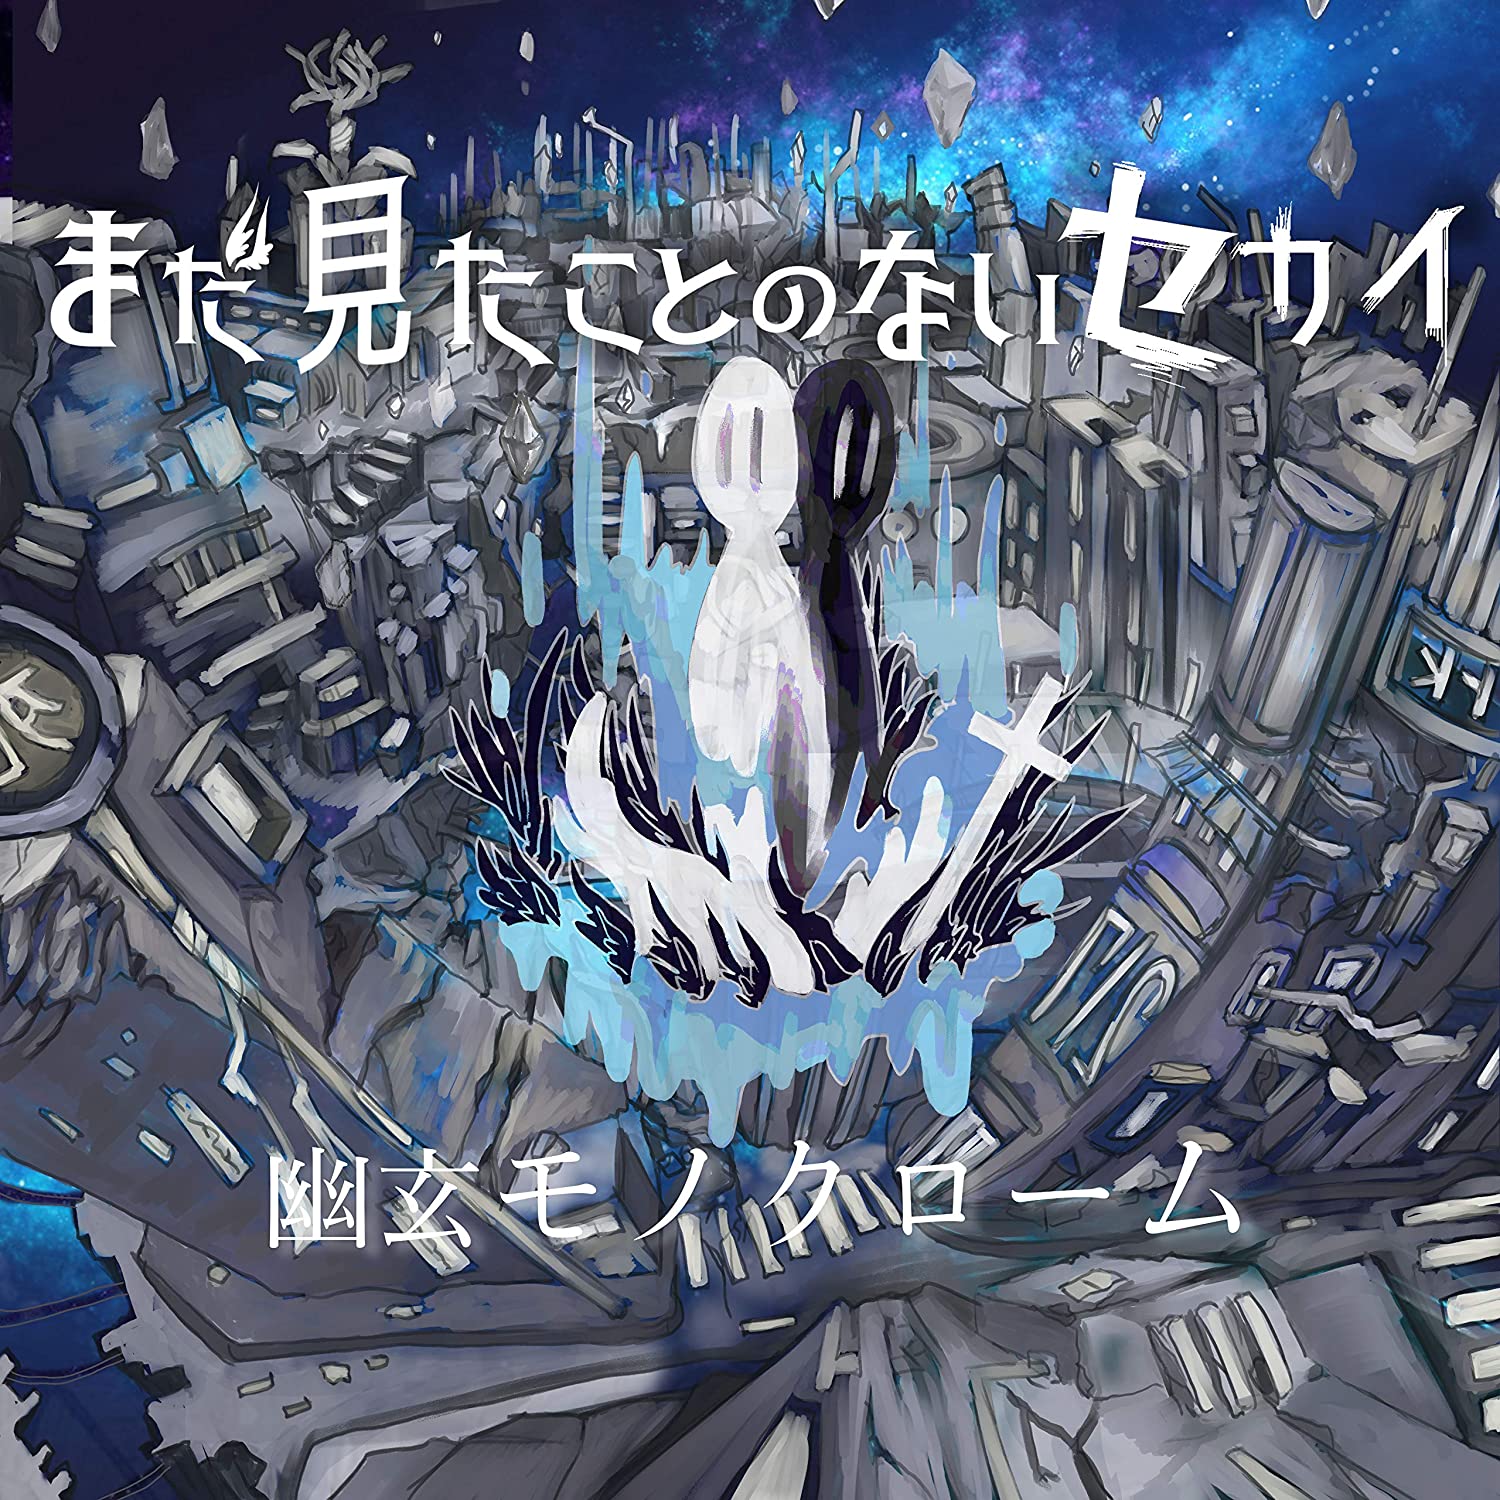 Mada Mitakoto no Nai Sekai — Gokusaishiki no Utopia cover artwork